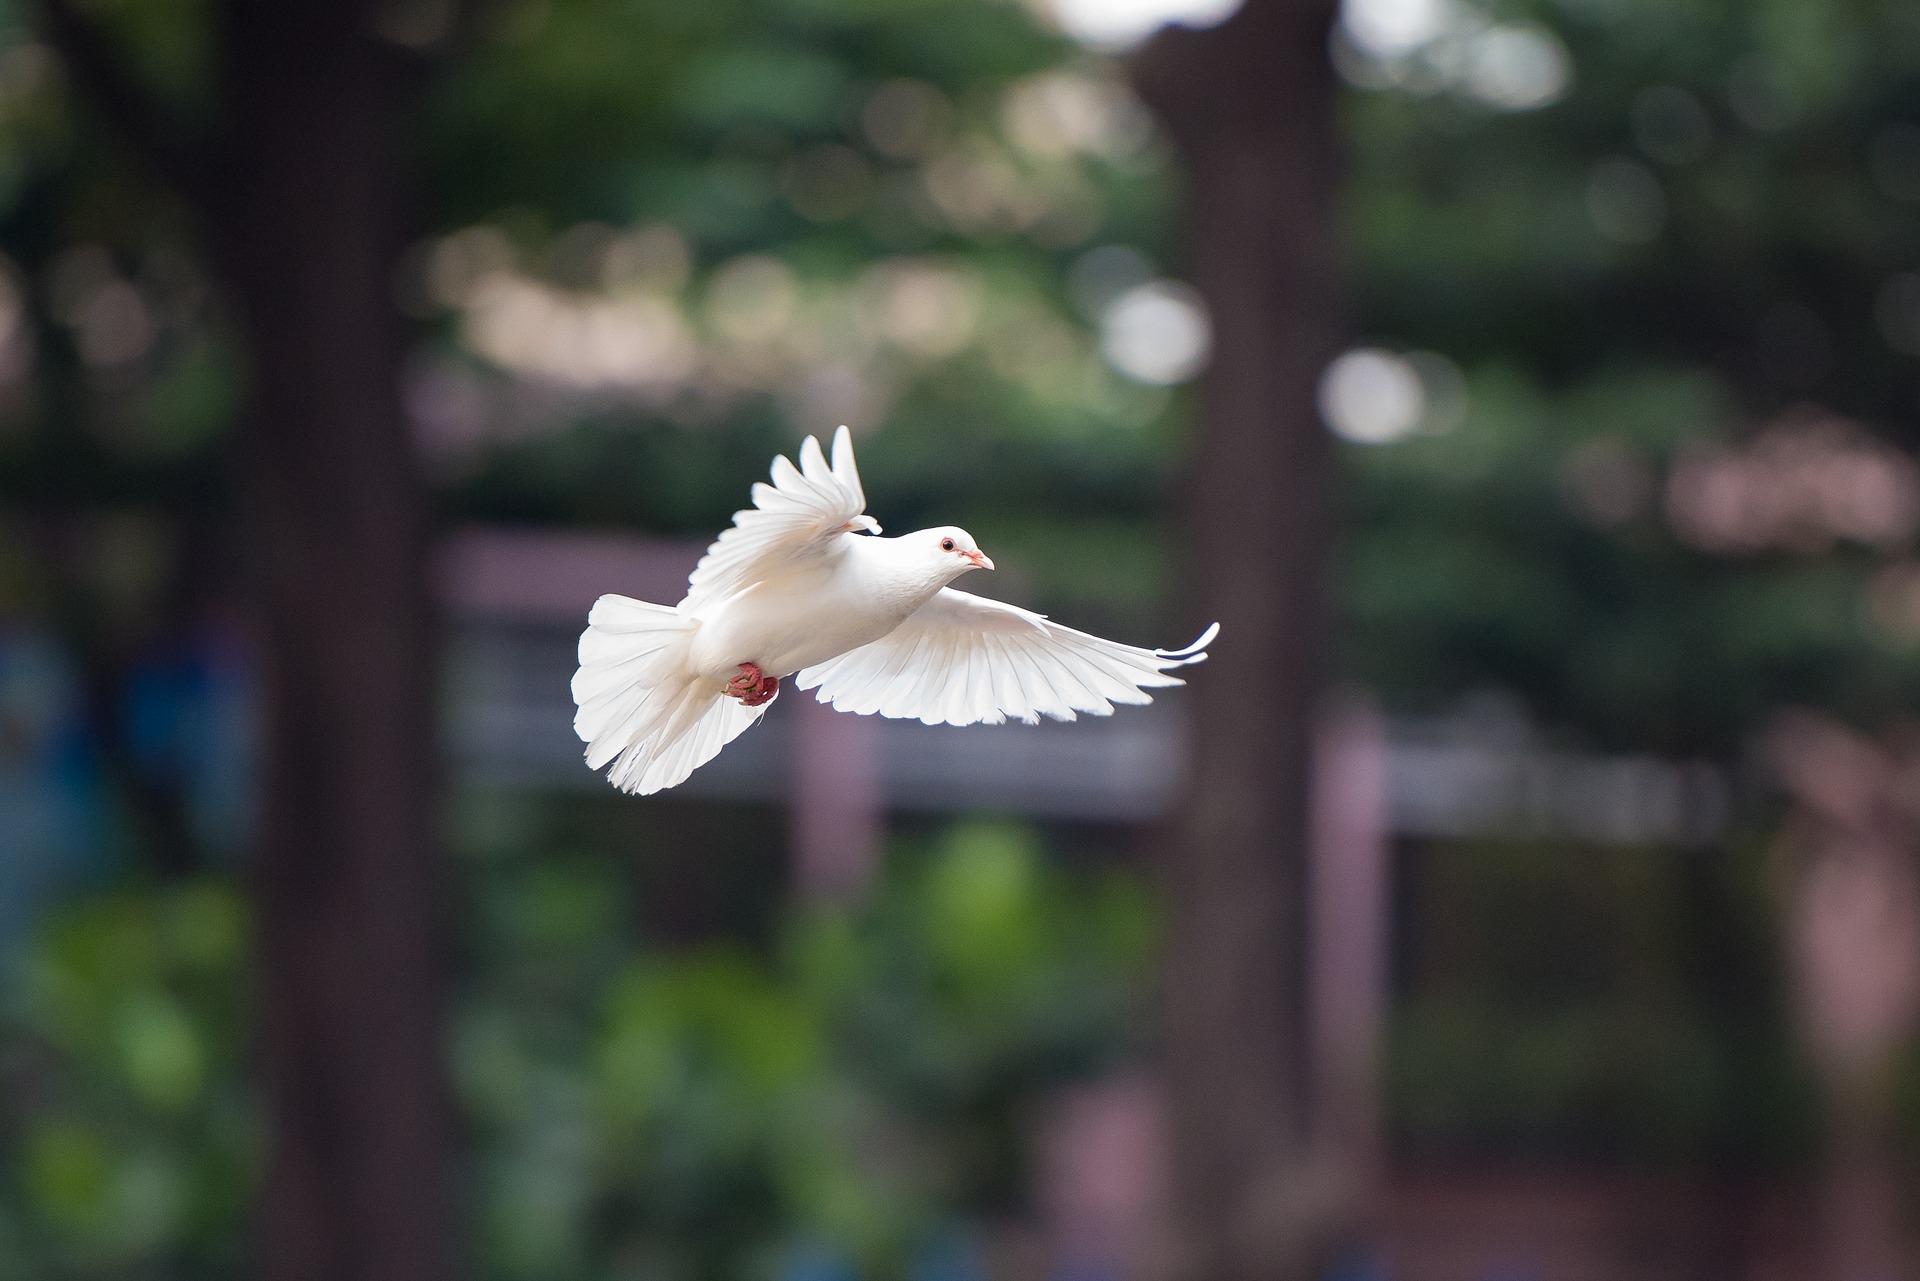 Stimmungsbild zum Beitrag: Es wird eine weiße Taube im Flug vor verschwommenem Hintergrund abgebildet.